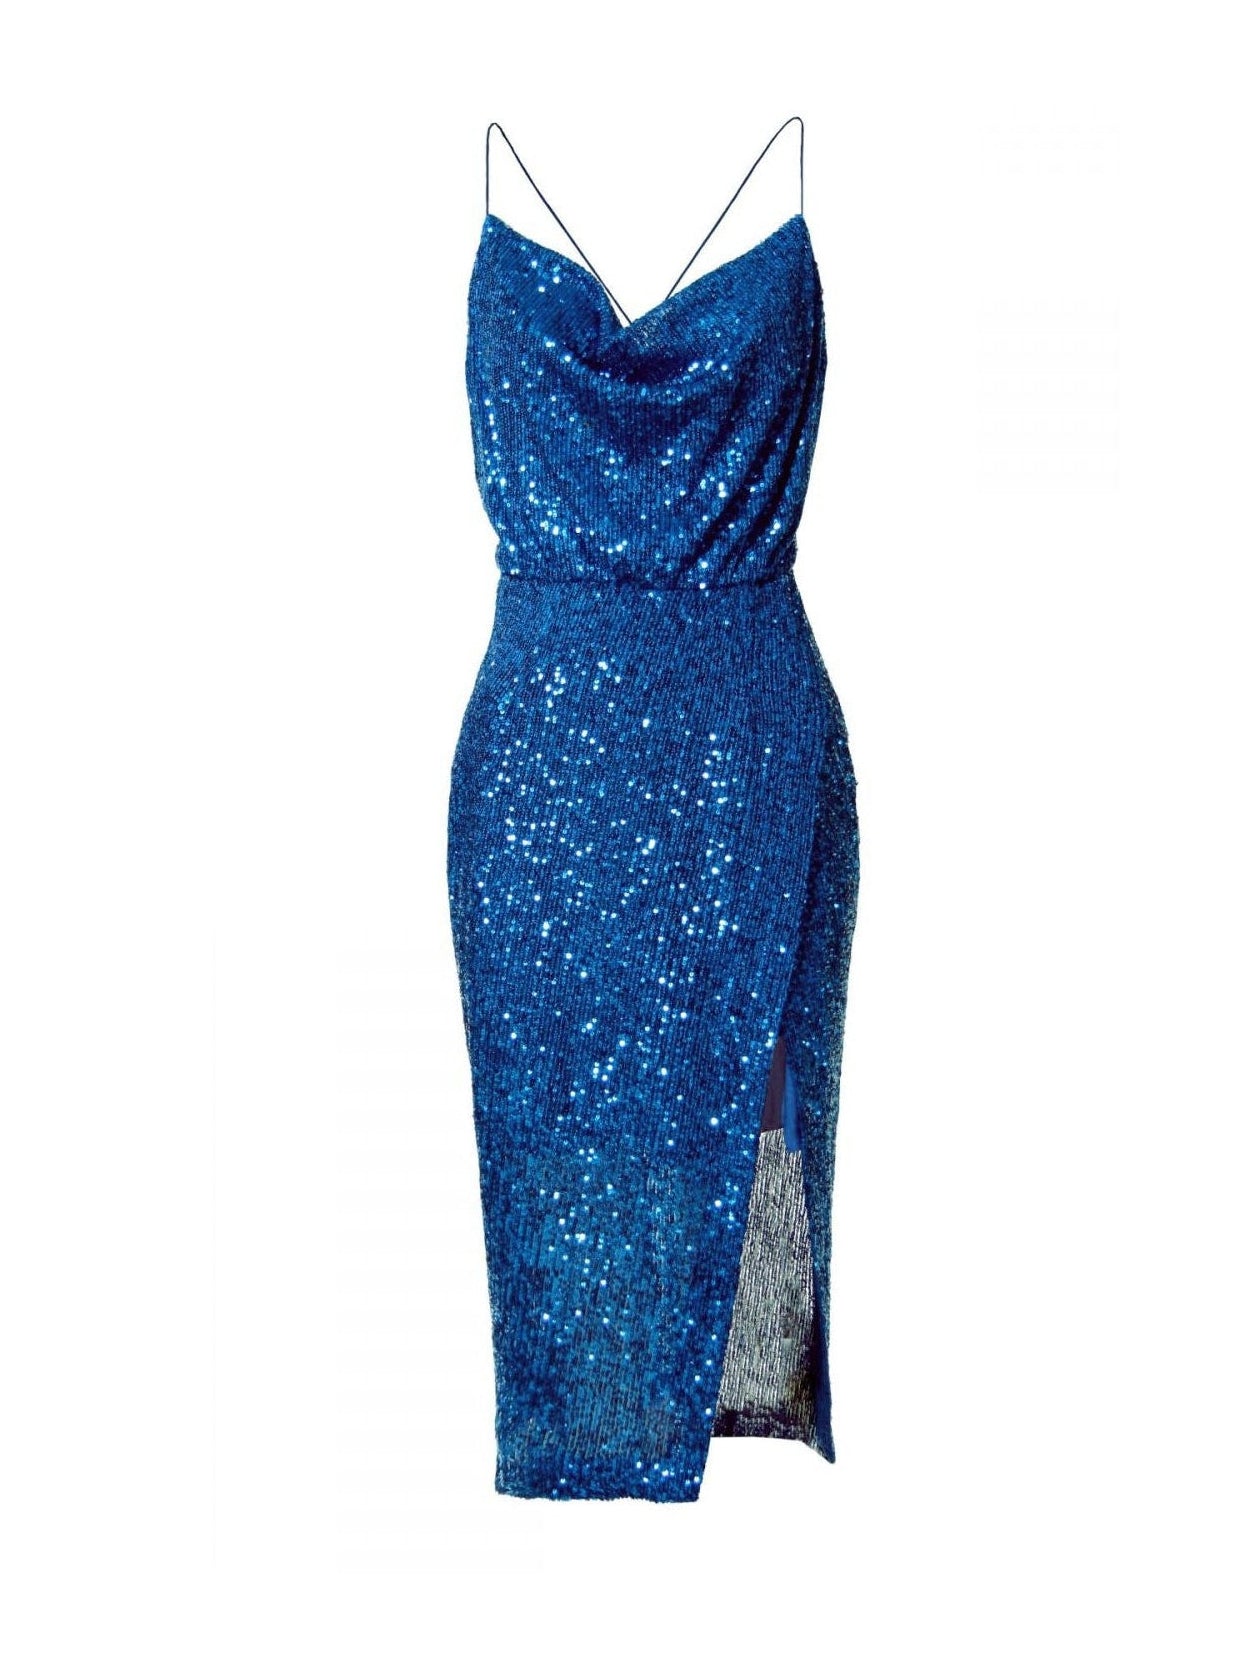 Kim Brillant Blue Dress